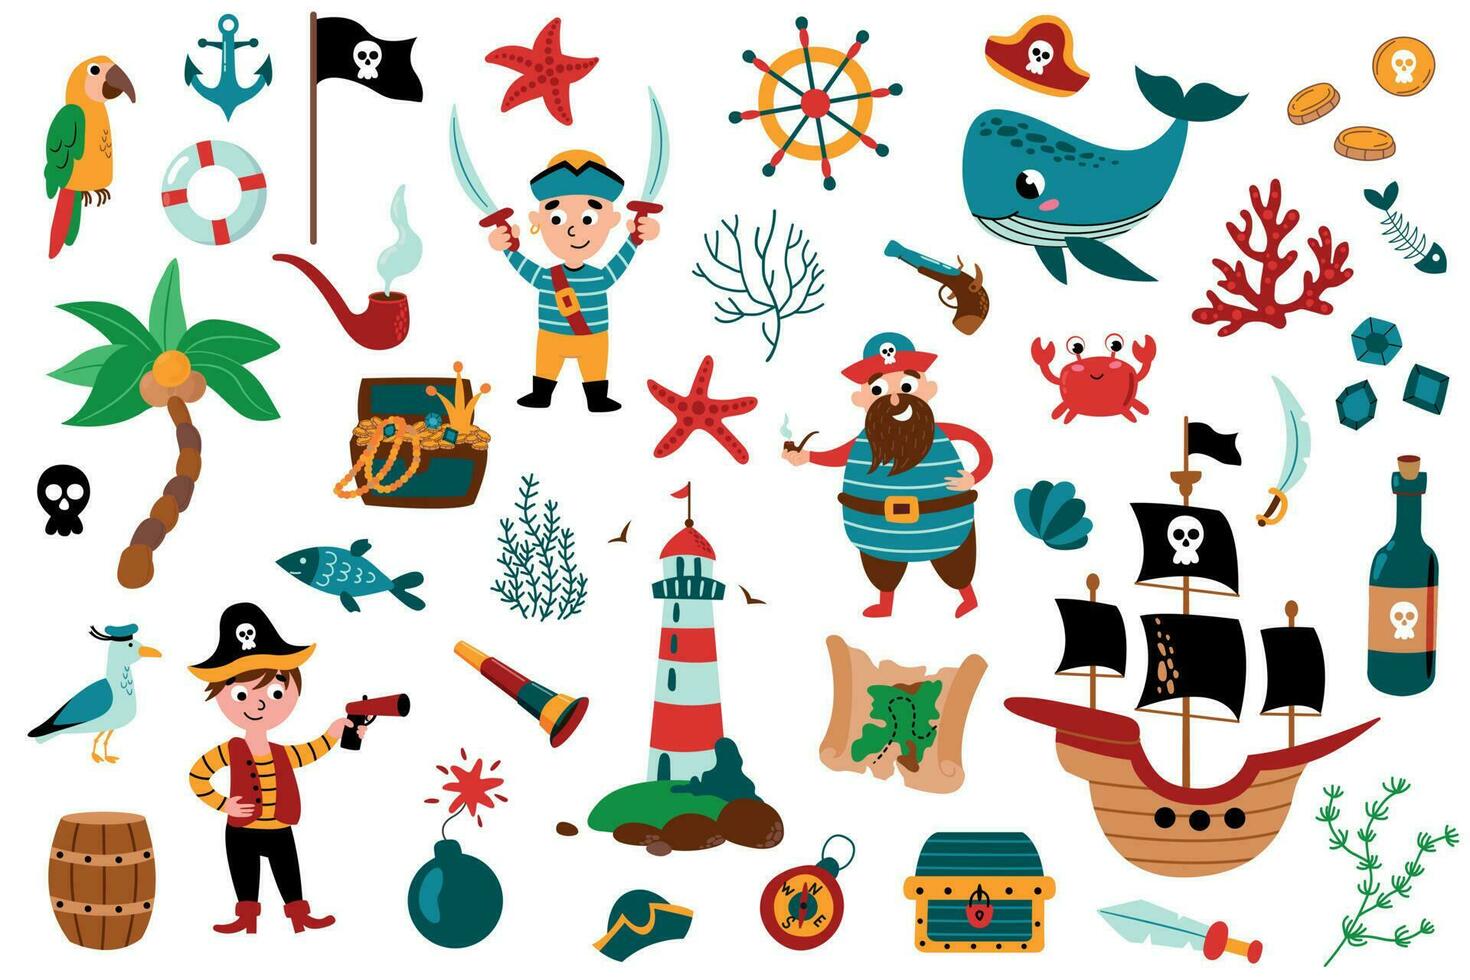 pirata colocar. pirata fiesta para jardín de infancia aventuras tesoro piratas vector